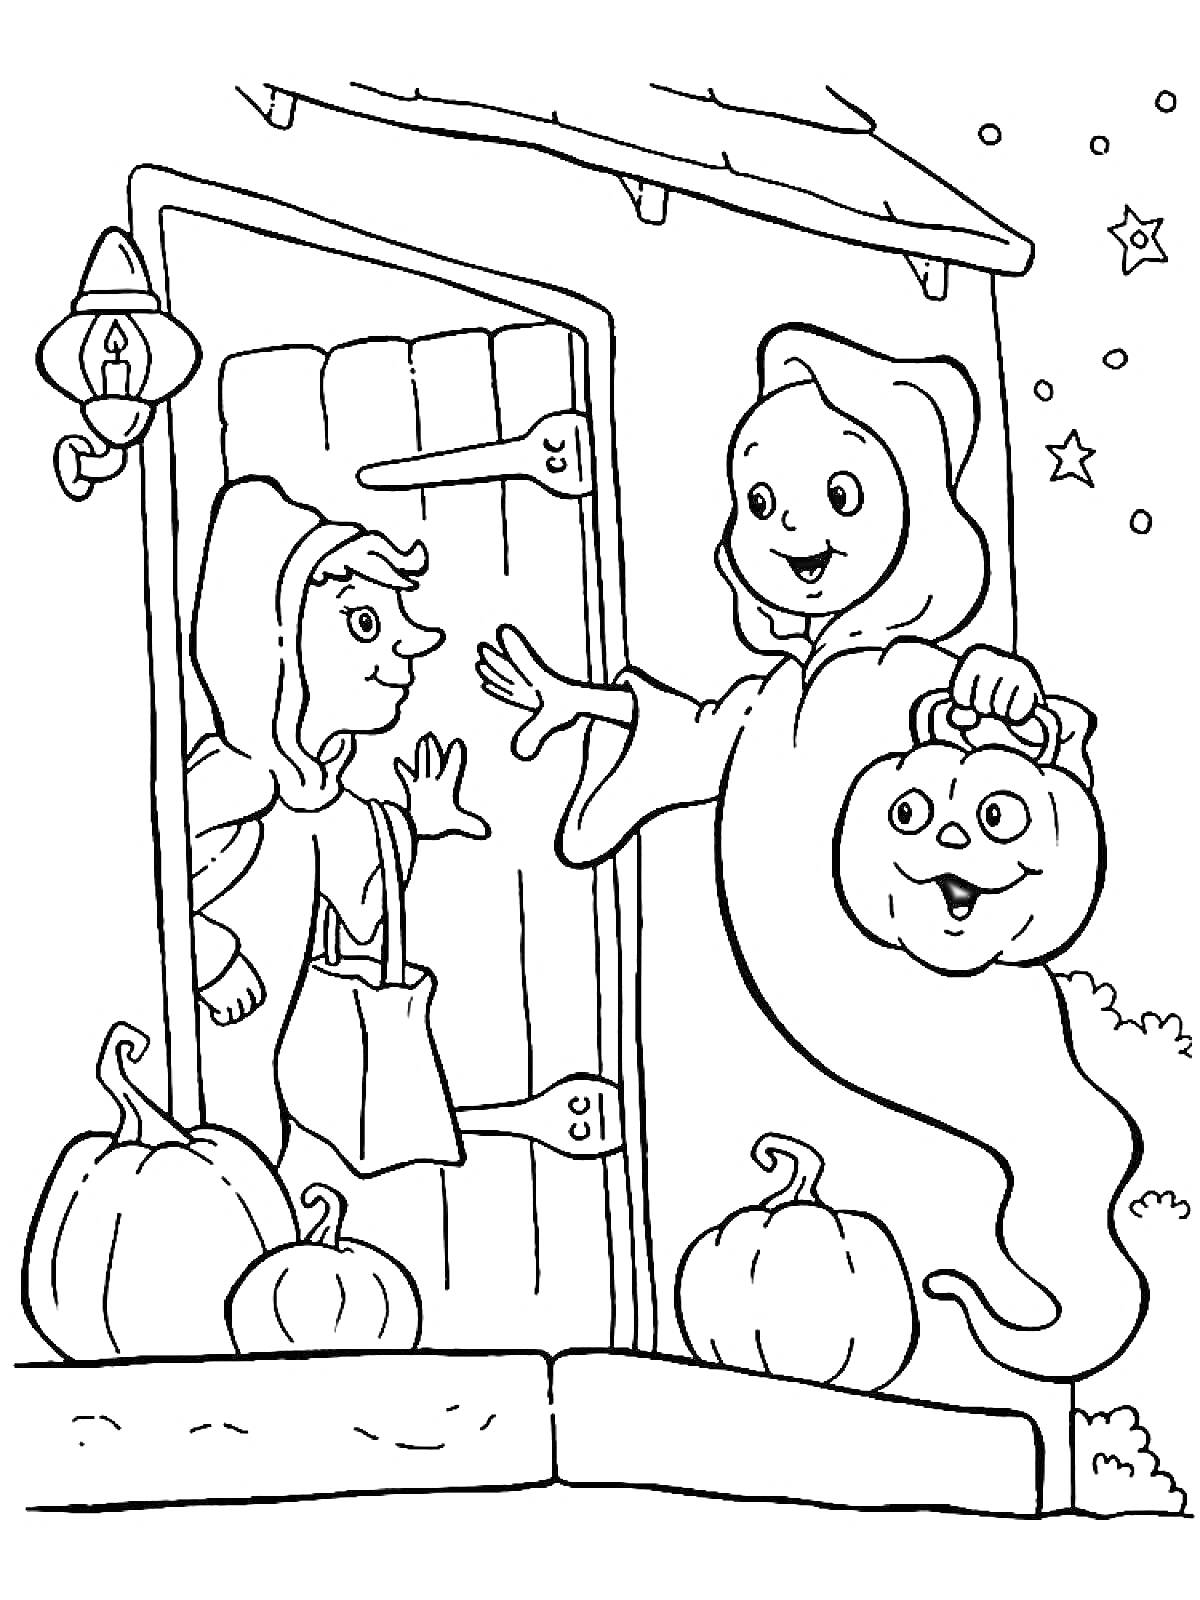 Раскраска Встреча двух детей на пороге дома, одетых в костюмы, один в костюме призрака с фонарем-тыквой, другой у дверей с фонарем.